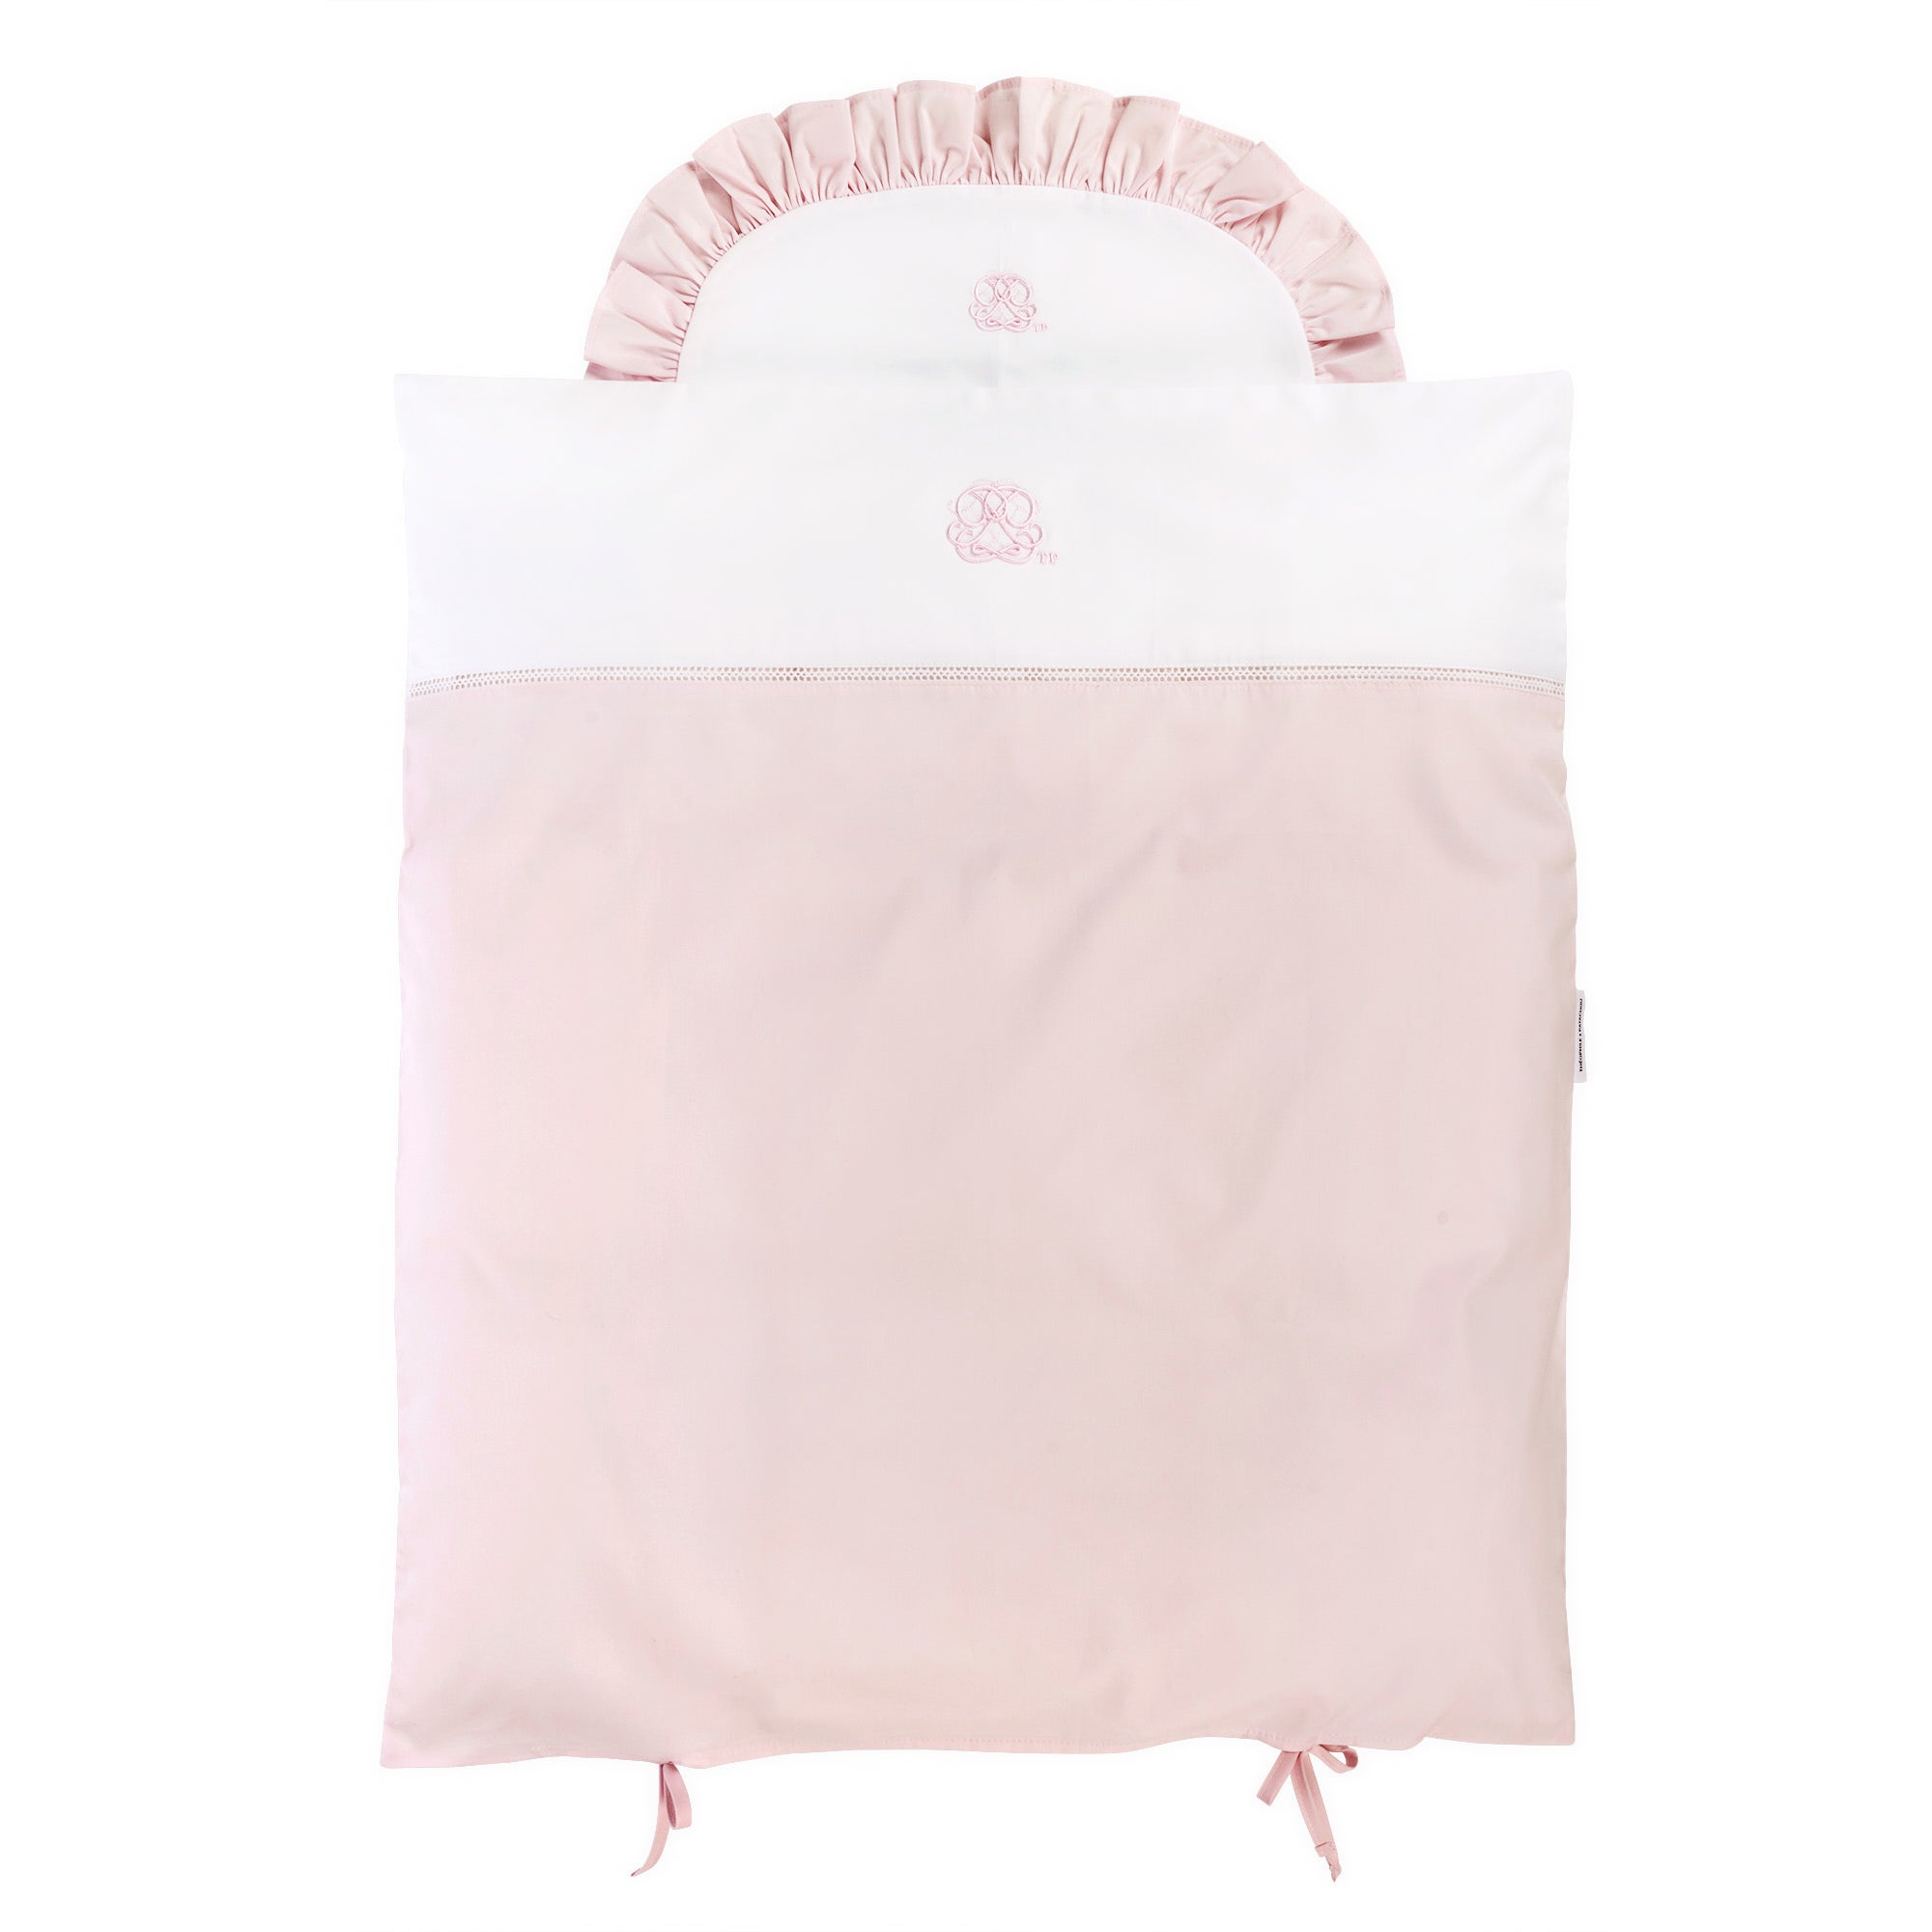 Theophile & Patachou Cradle Duvet Cover - Cotton Pink